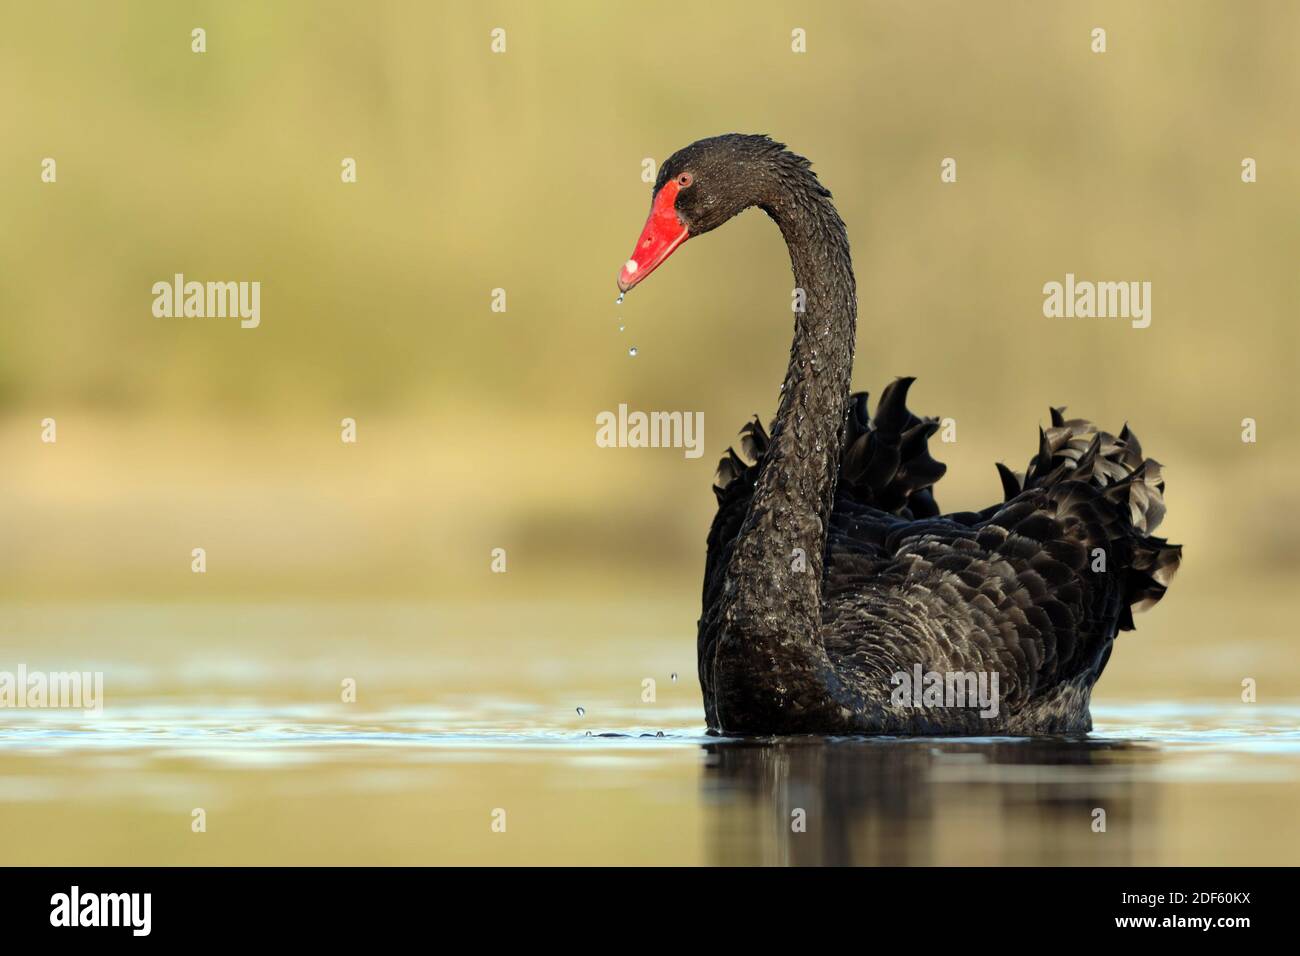 Trauerschwan schwimmt im Wasser, Schwarzer Schwan, ( Cygnius atratus), Stock Photo